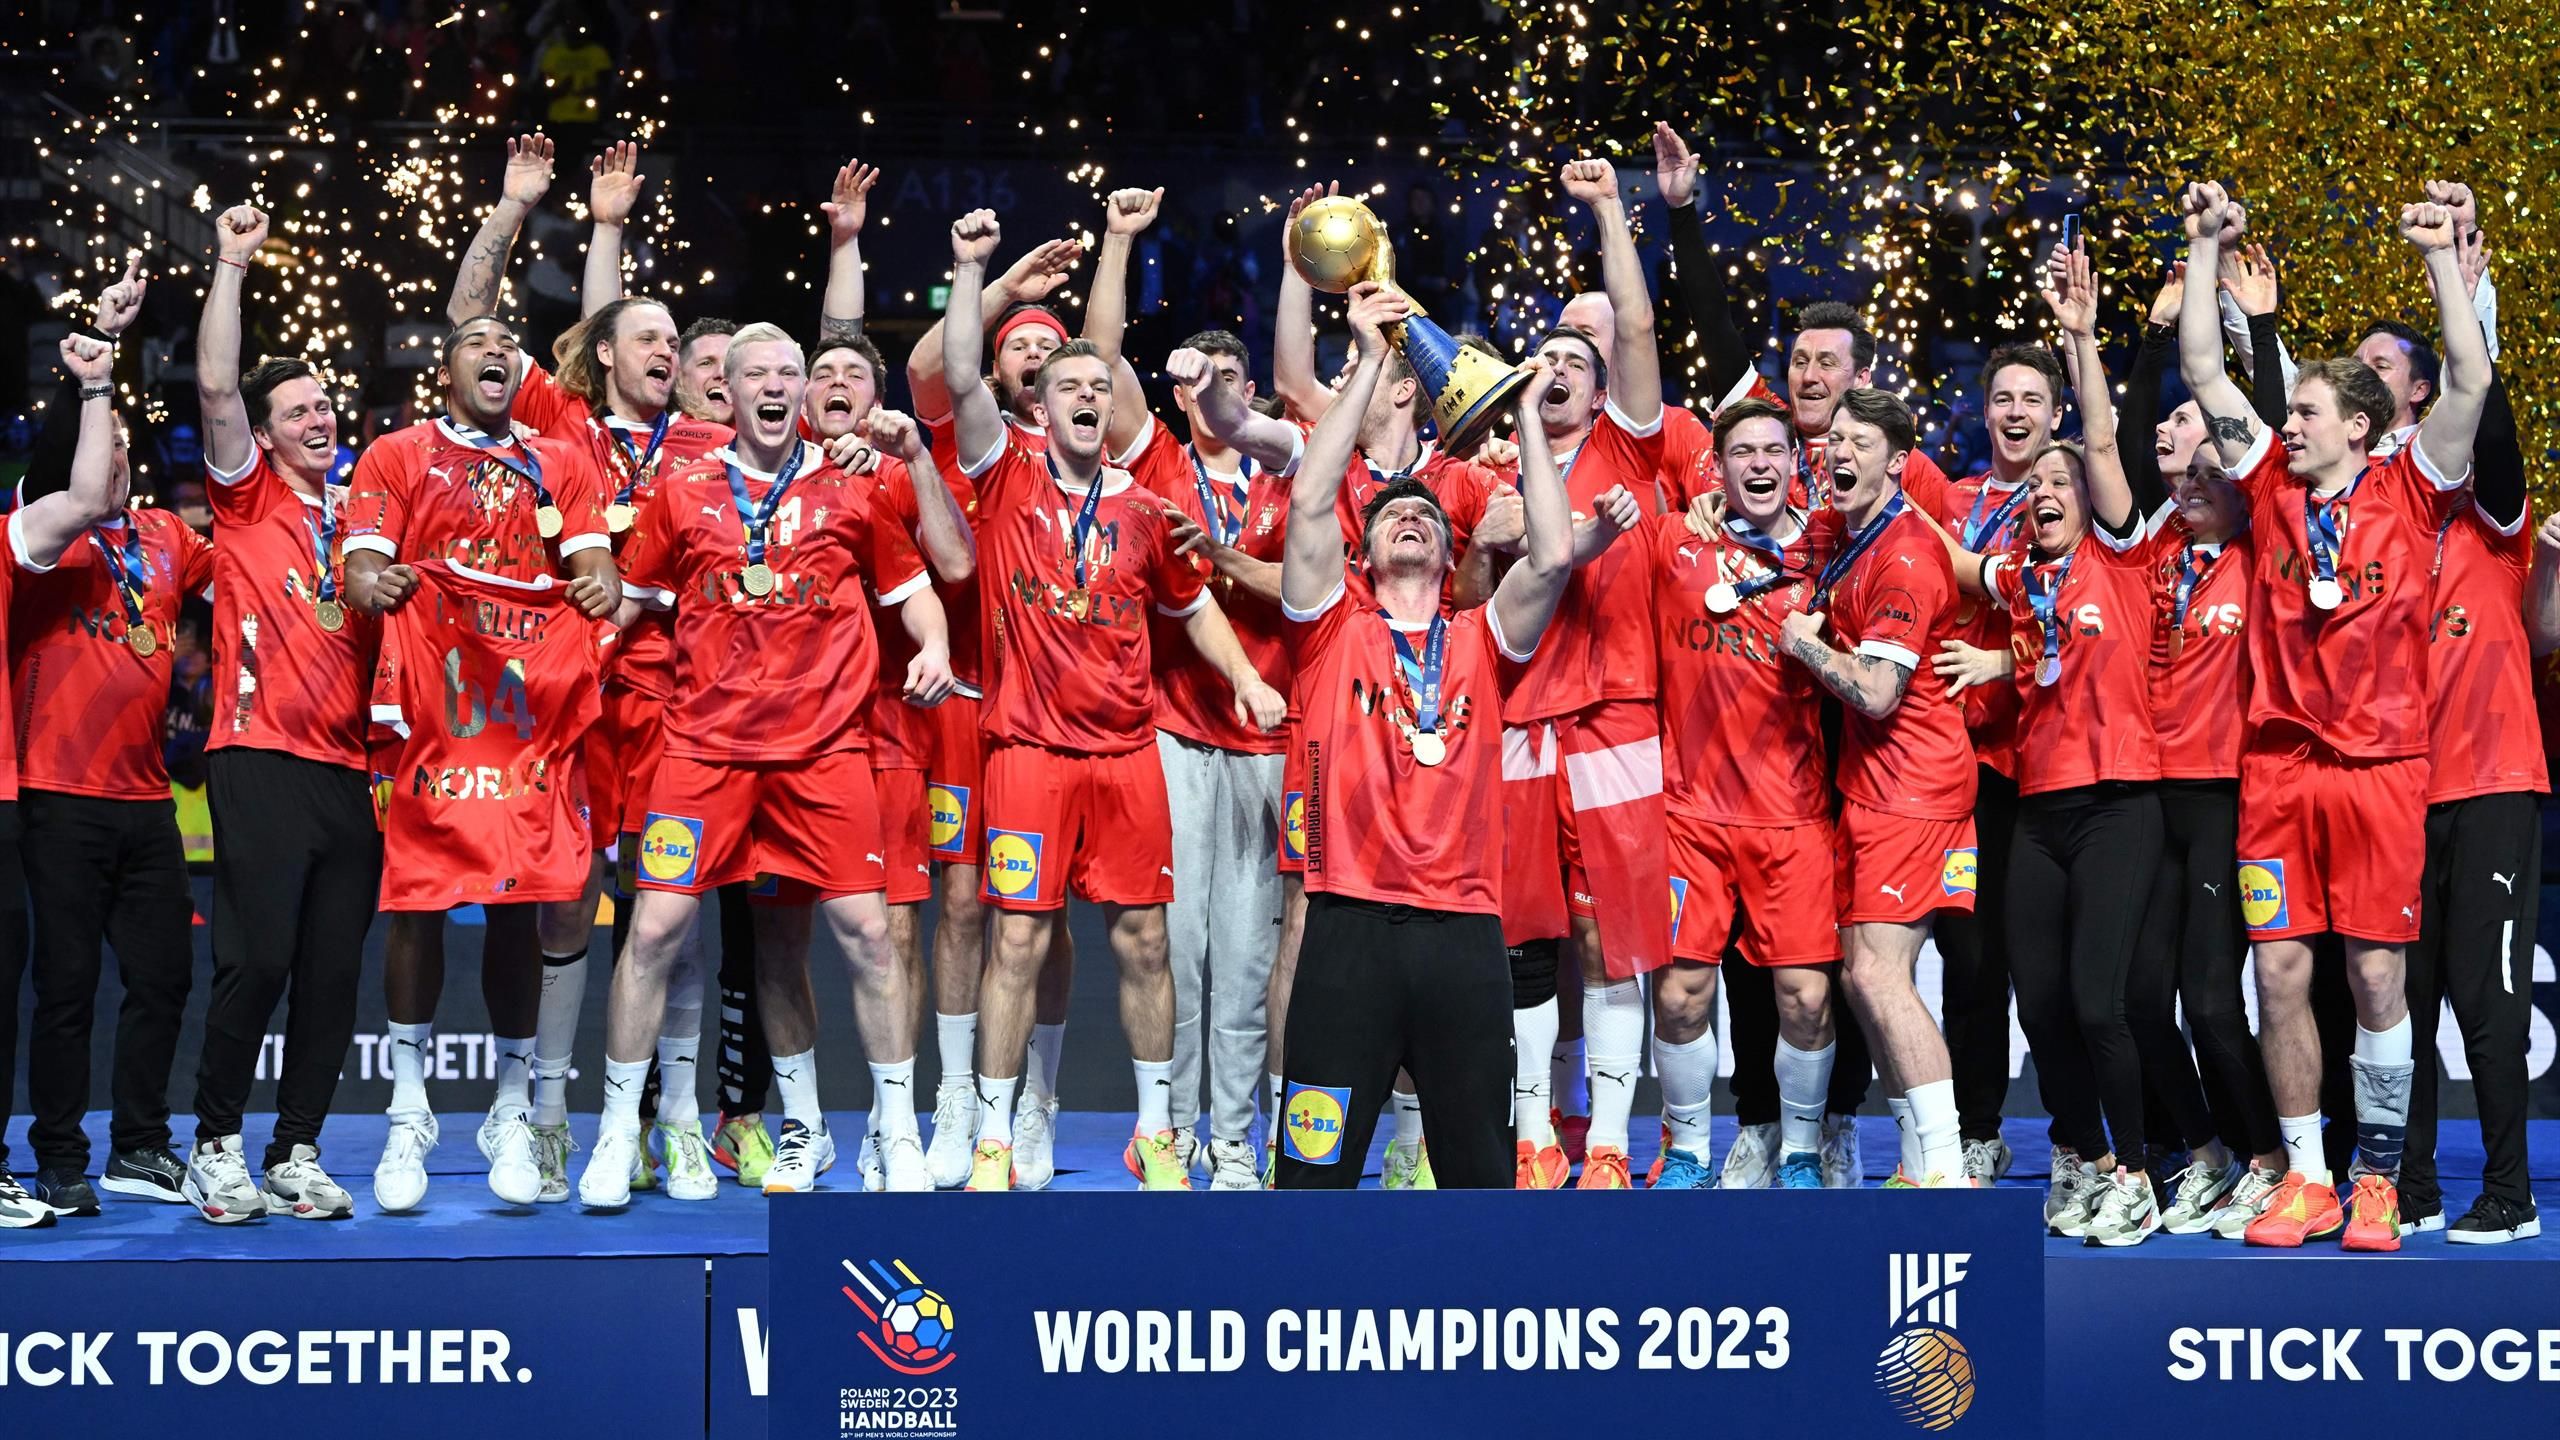 Handball-WM 2023 - Dänemarks Könige in Stockholm gekrönt Siegerehrung nach Finalkrimi gegen Frankreich - Handball Video